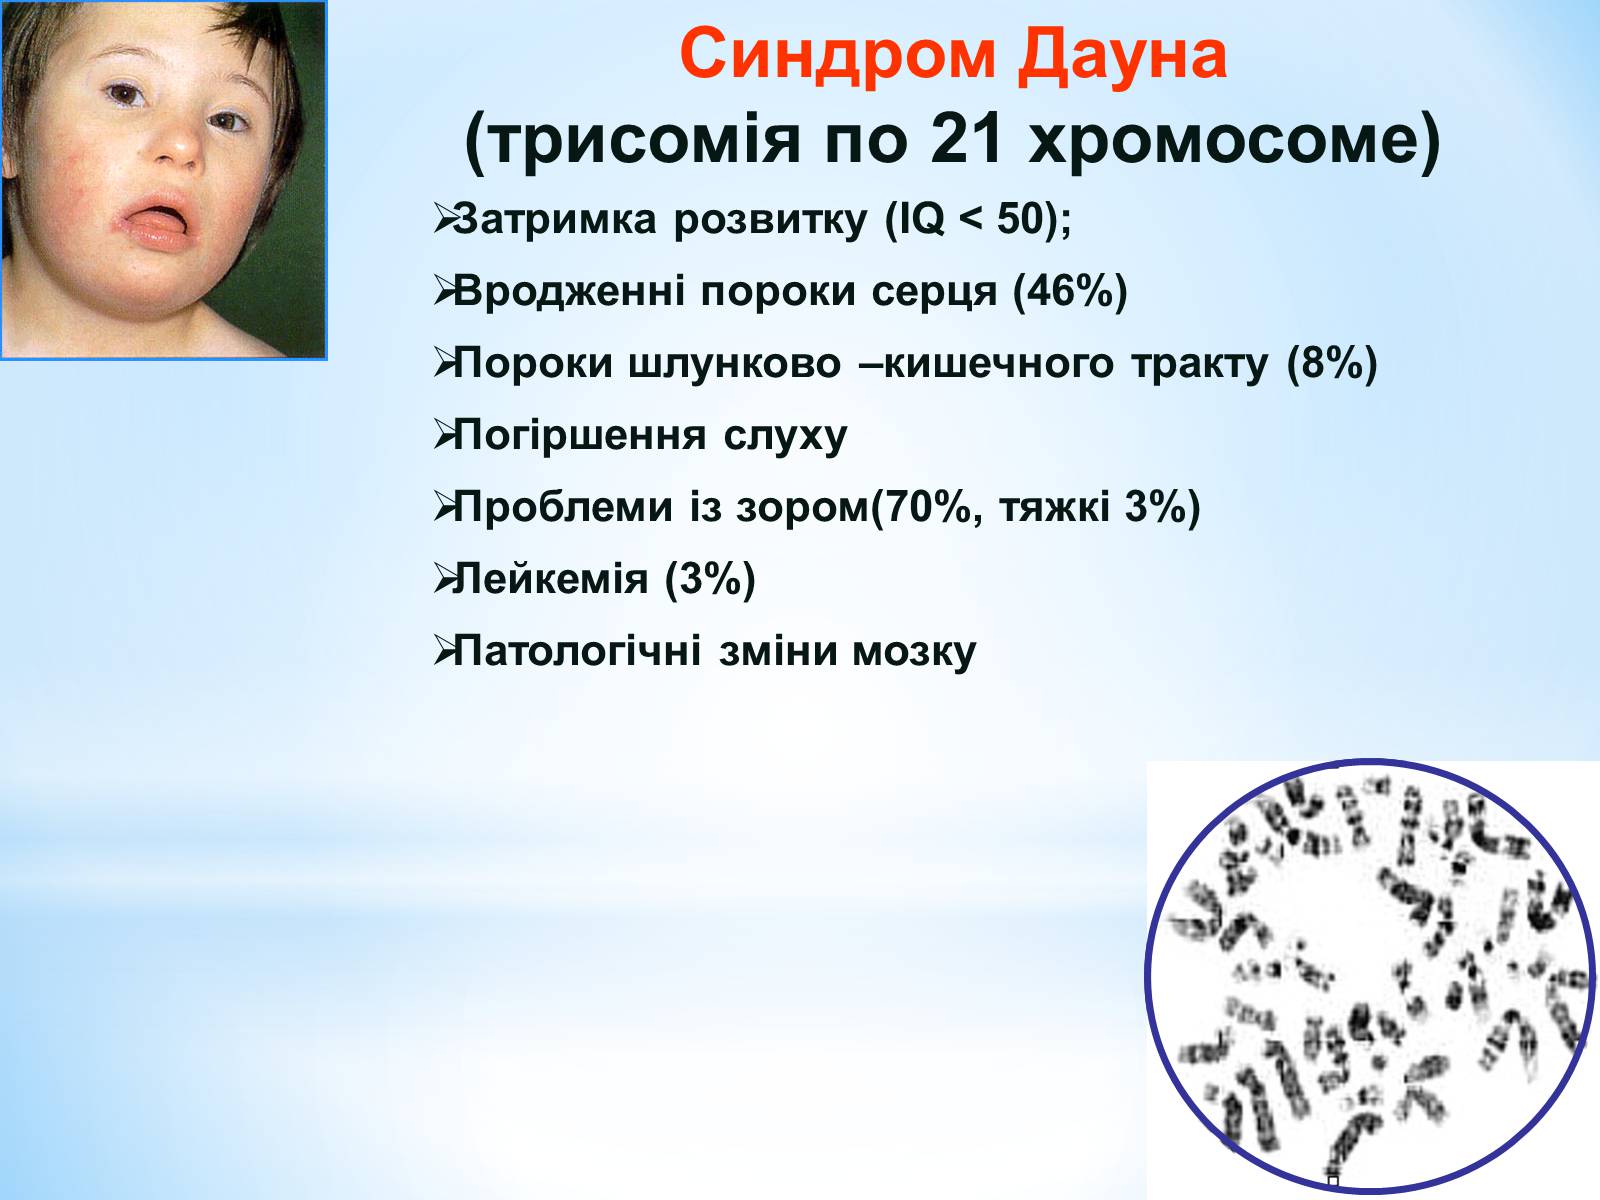 Синдром дауна лишняя хромосома. Синдром Дауна. Синдром Дауна хромосомы. Синдром Дауна трисомия. Синдром Дауна трисомия 21 хромосомы.